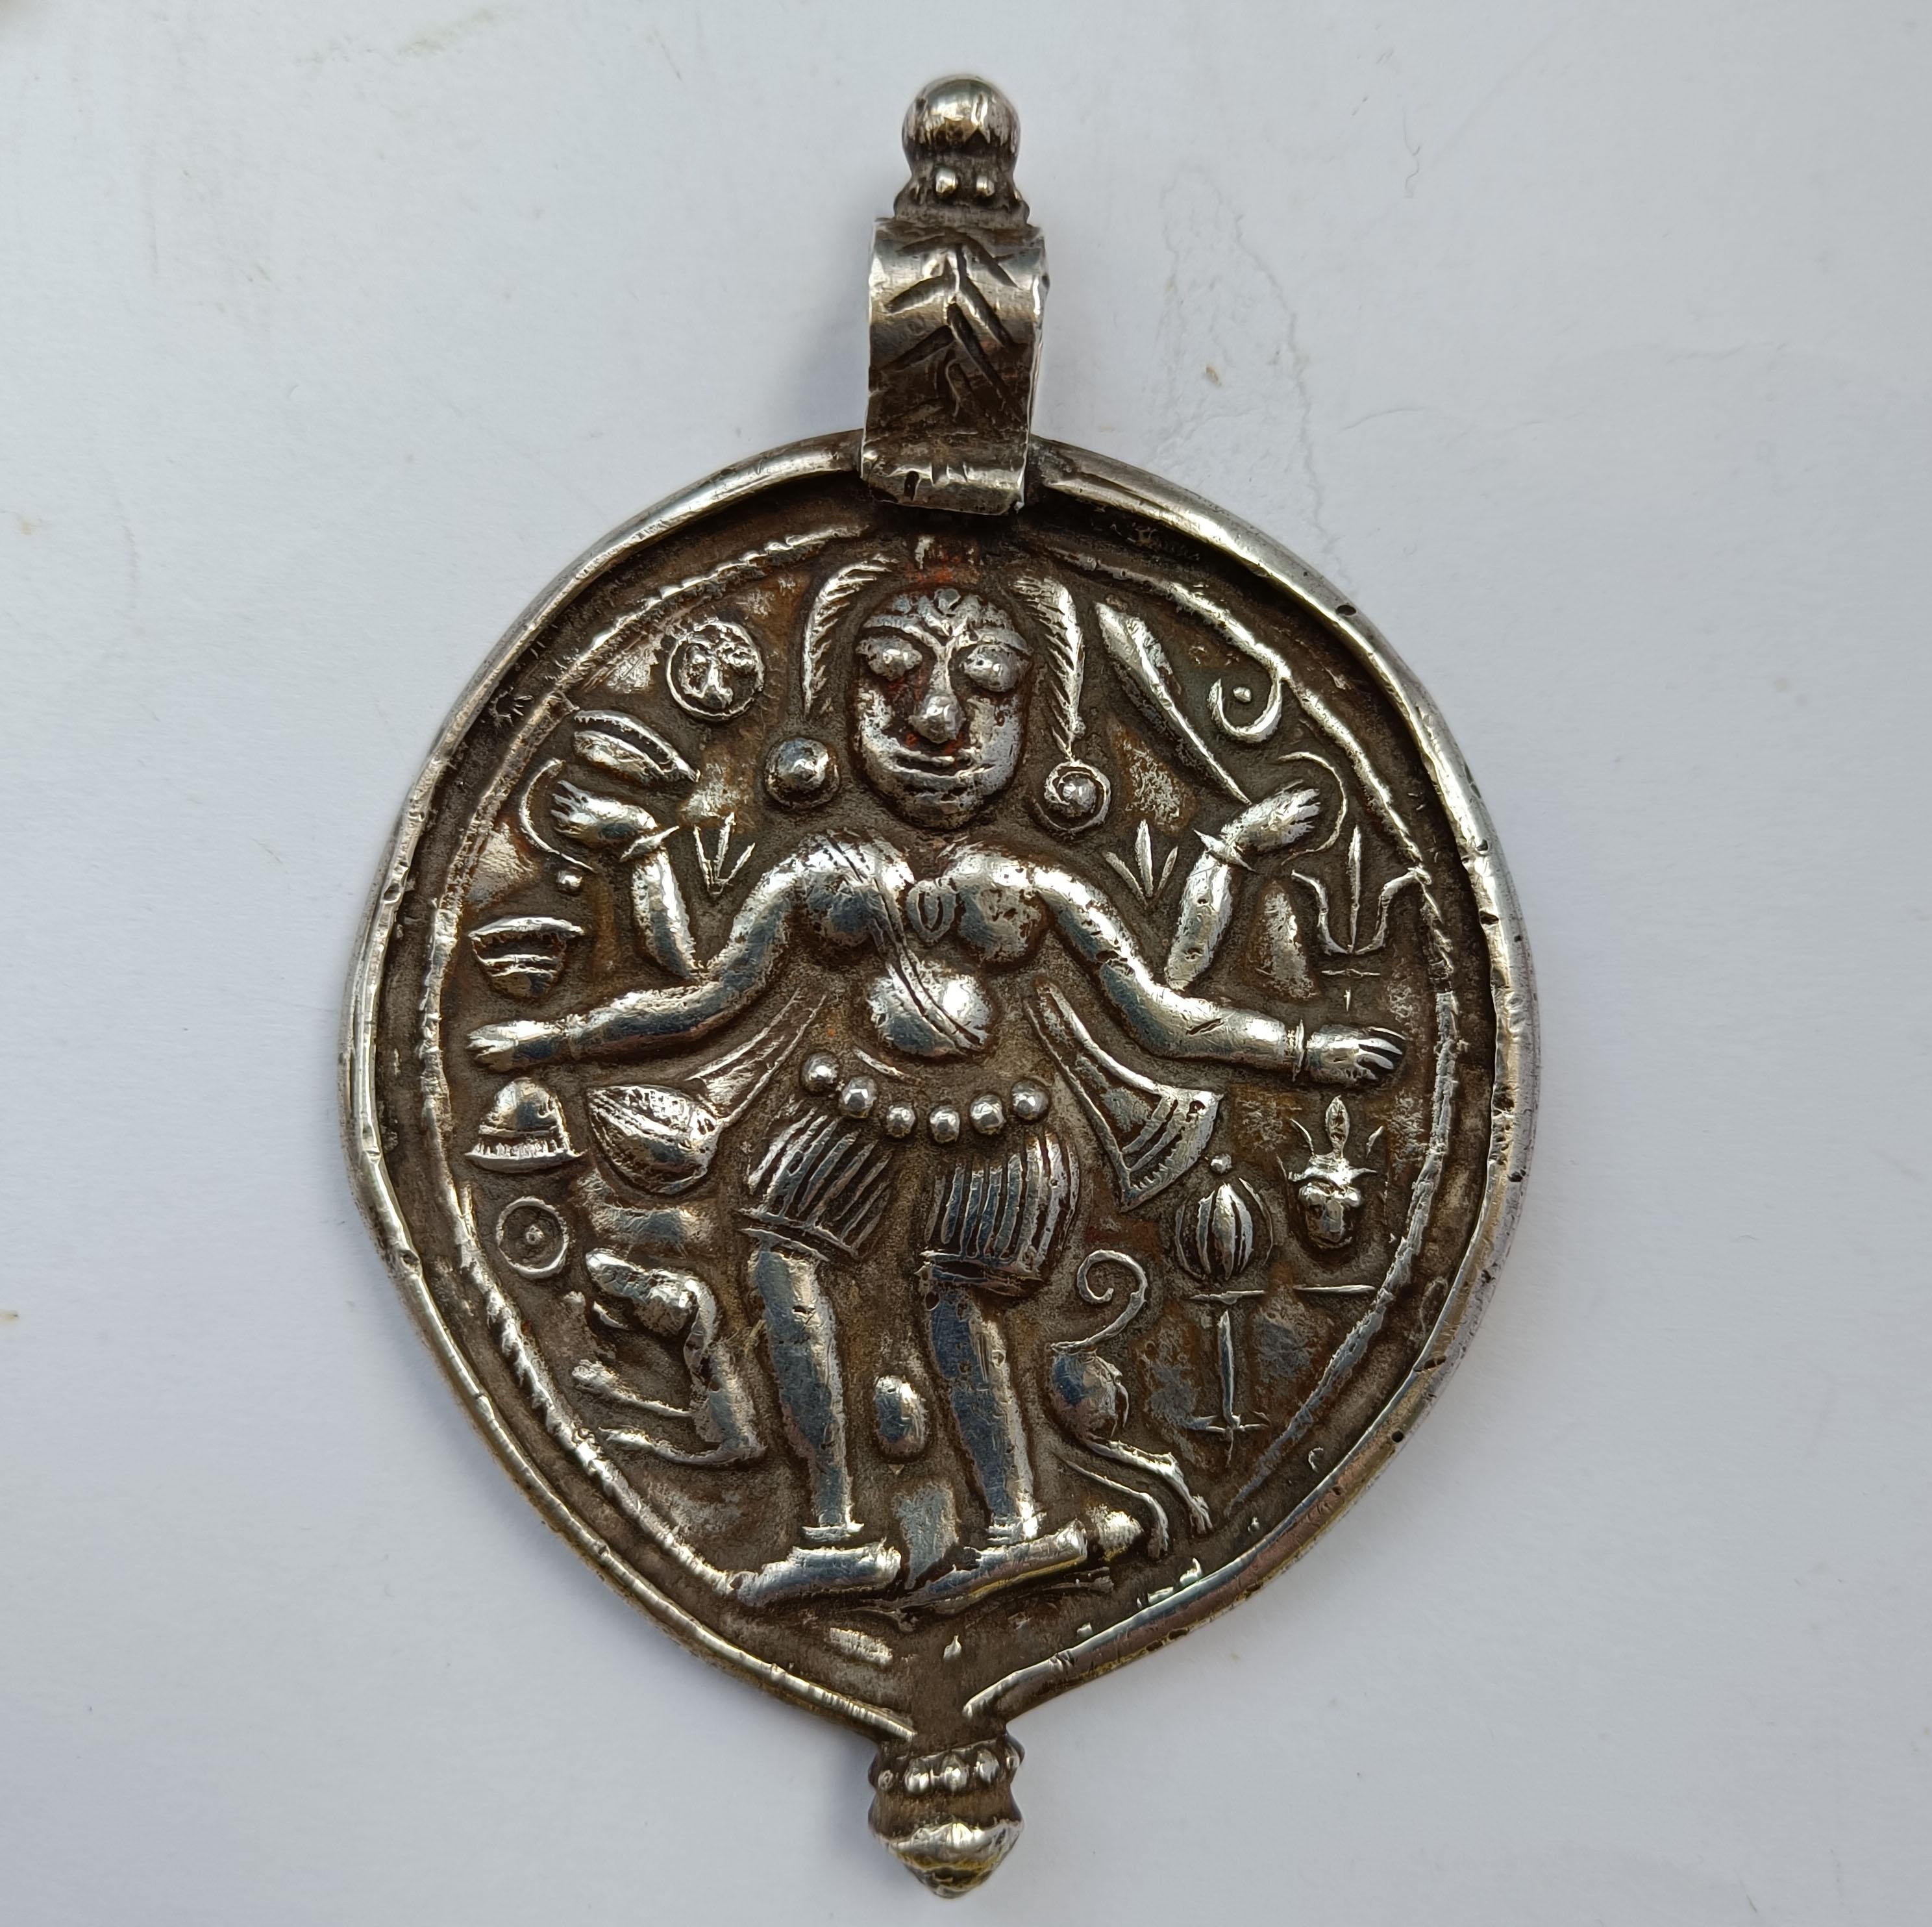 Große seltene antike indische Hindu Silber Amulett Anhänger
Zeitraum 19. Jahrhundert
Schwer Hochwertiges Silber  
Anhänger Länge 11 x 7,5   cm  Gewicht 65 Gramm
Zustand: Gut.

 
 
